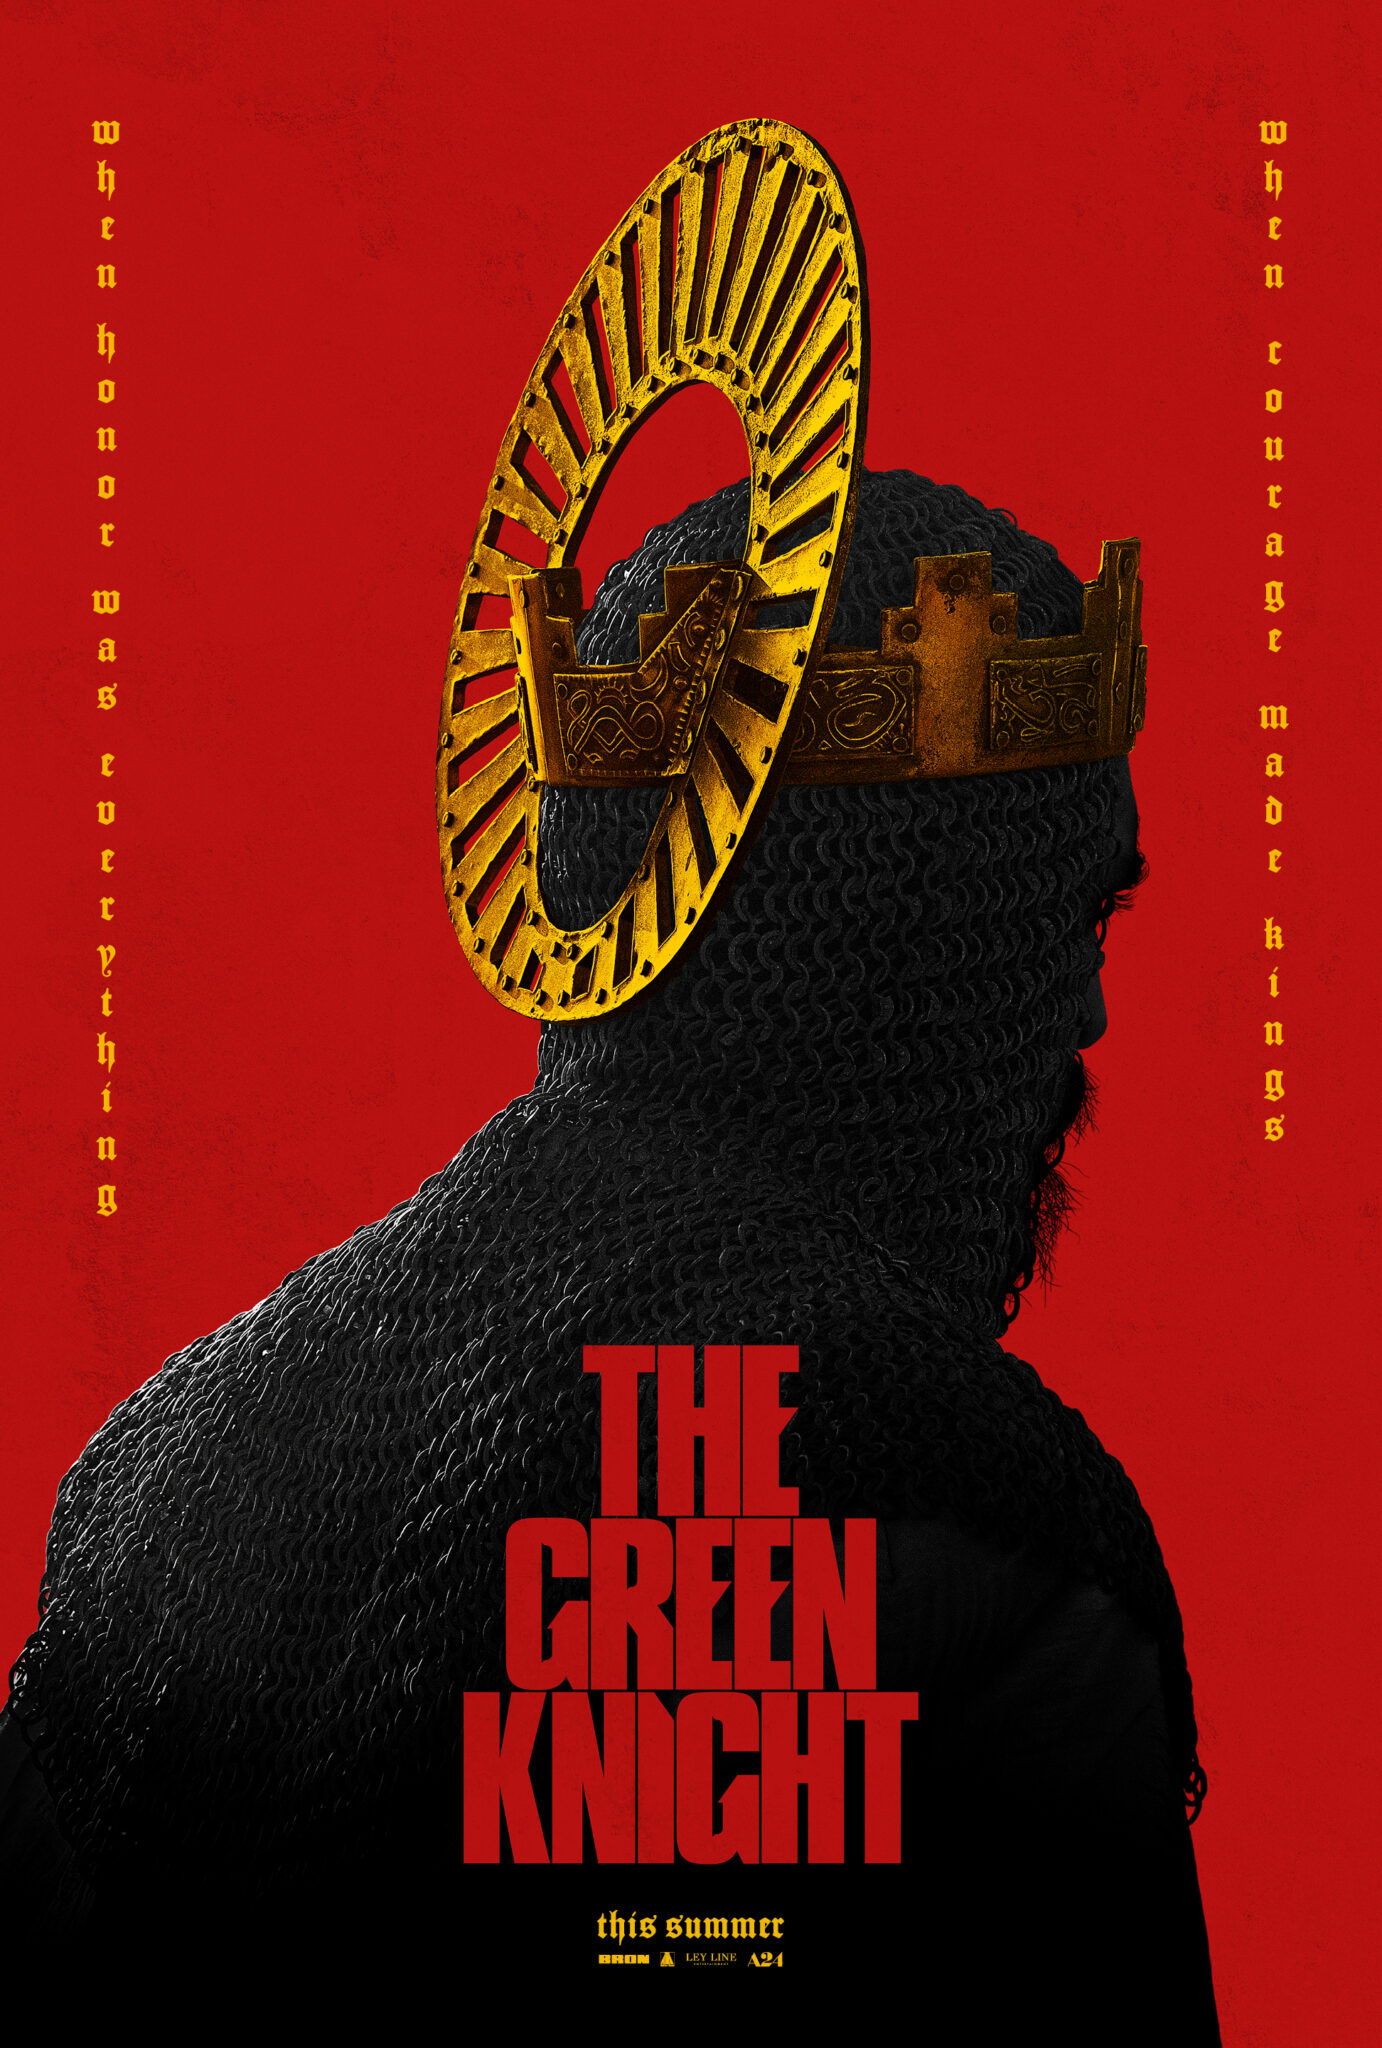 Das Poster zeigt einen Ritter mit Kettenhemd und goldener Krone von hinten. Zudem ist der Hintergrund komplett rot und auch der Titel in dieser Farbe gehalten.